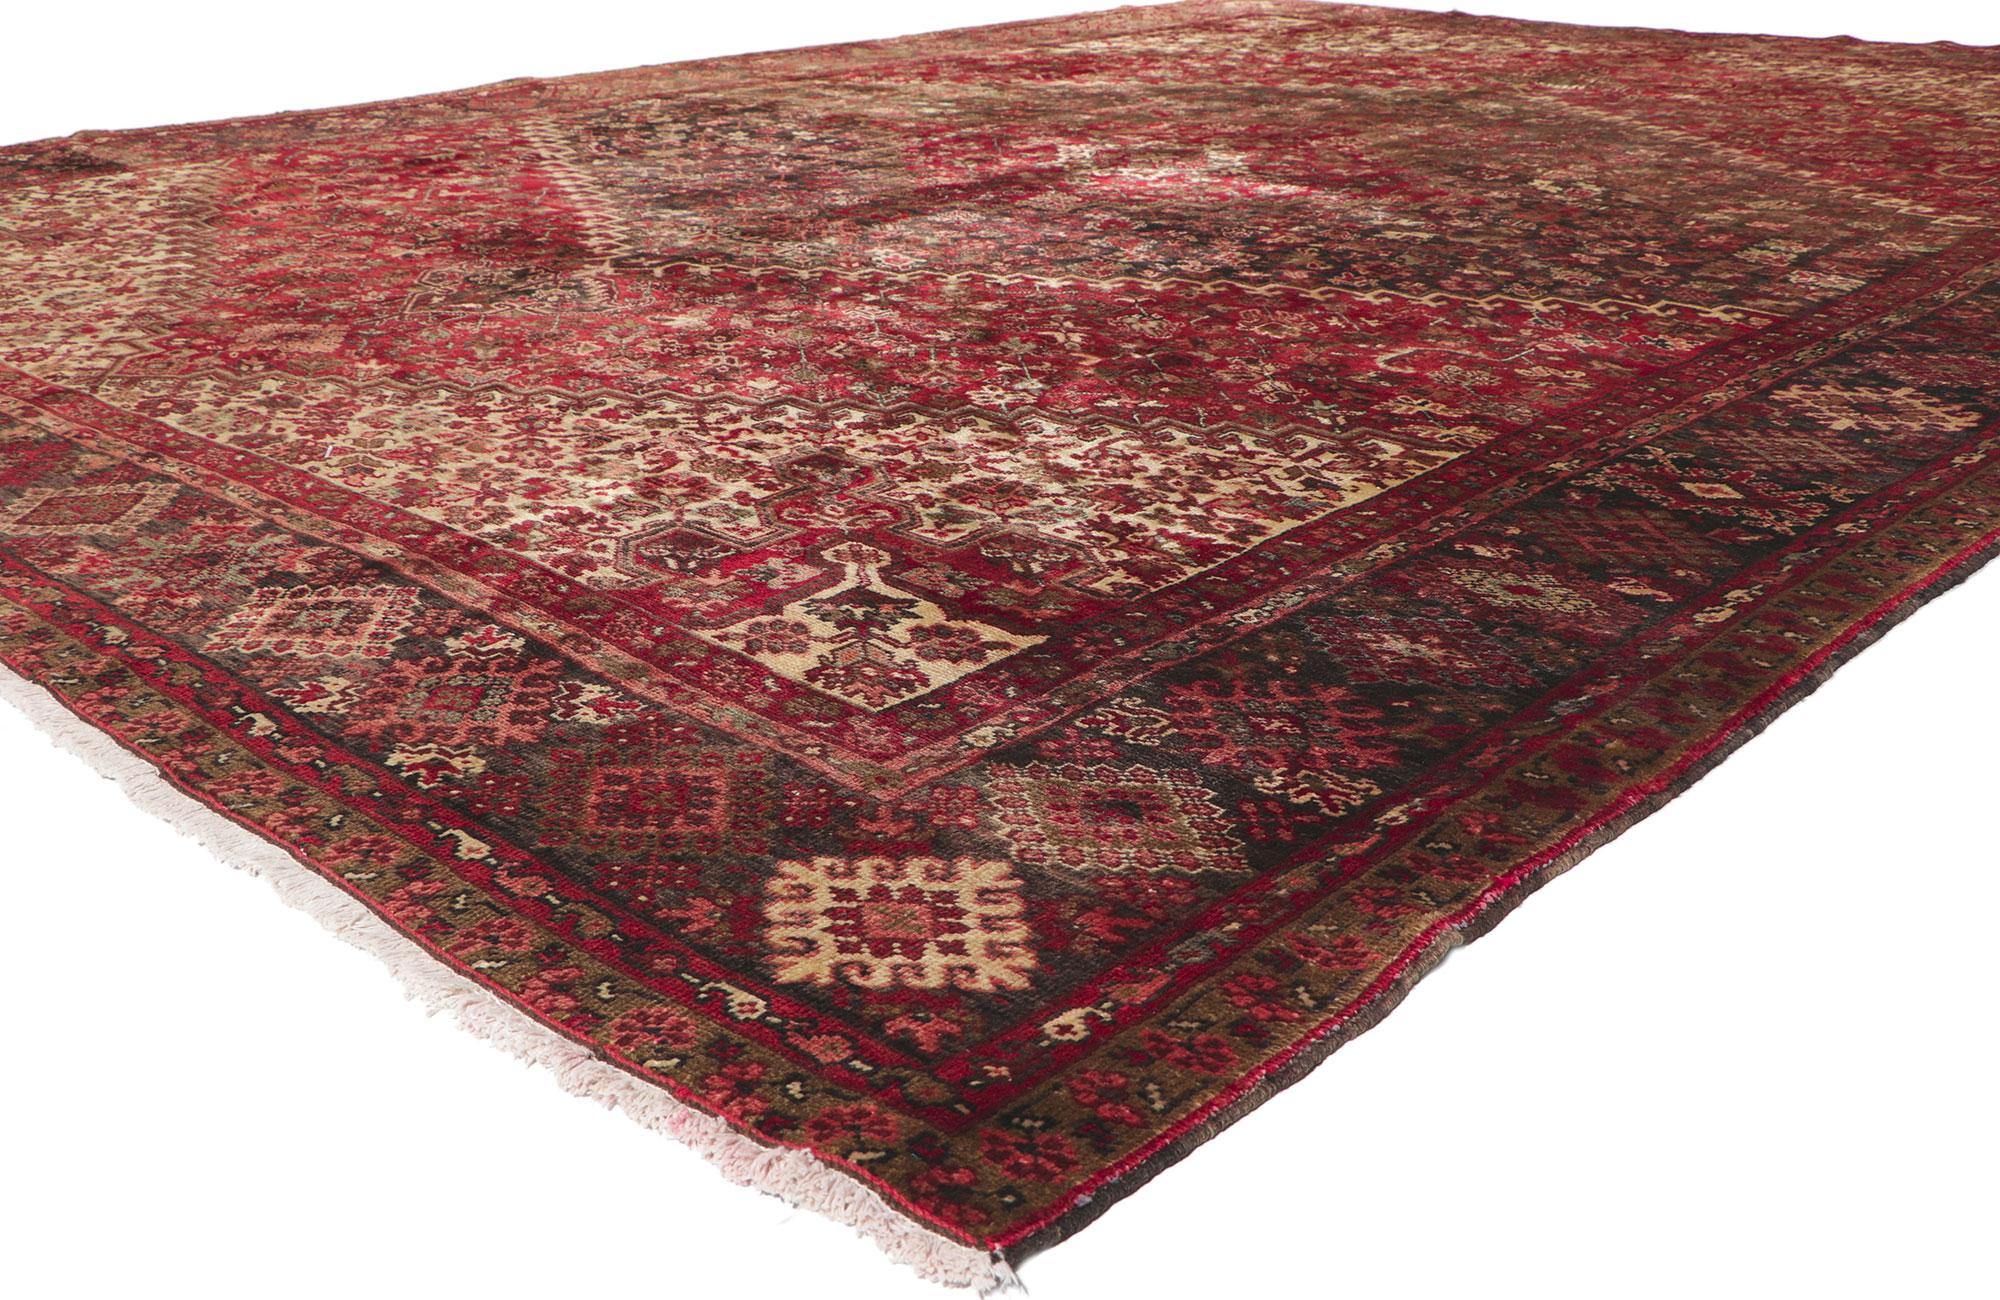 61196 Vintage Persian Heriz Rug, 11'05 x 14'11. Dieser handgeknüpfte persische Heriz-Teppich aus Wolle im Vintage-Stil ist warm und einladend und besticht durch seinen klassischen Stil. Das abgewetzte rote Feld zeigt ein konzentrisches Medaillon,